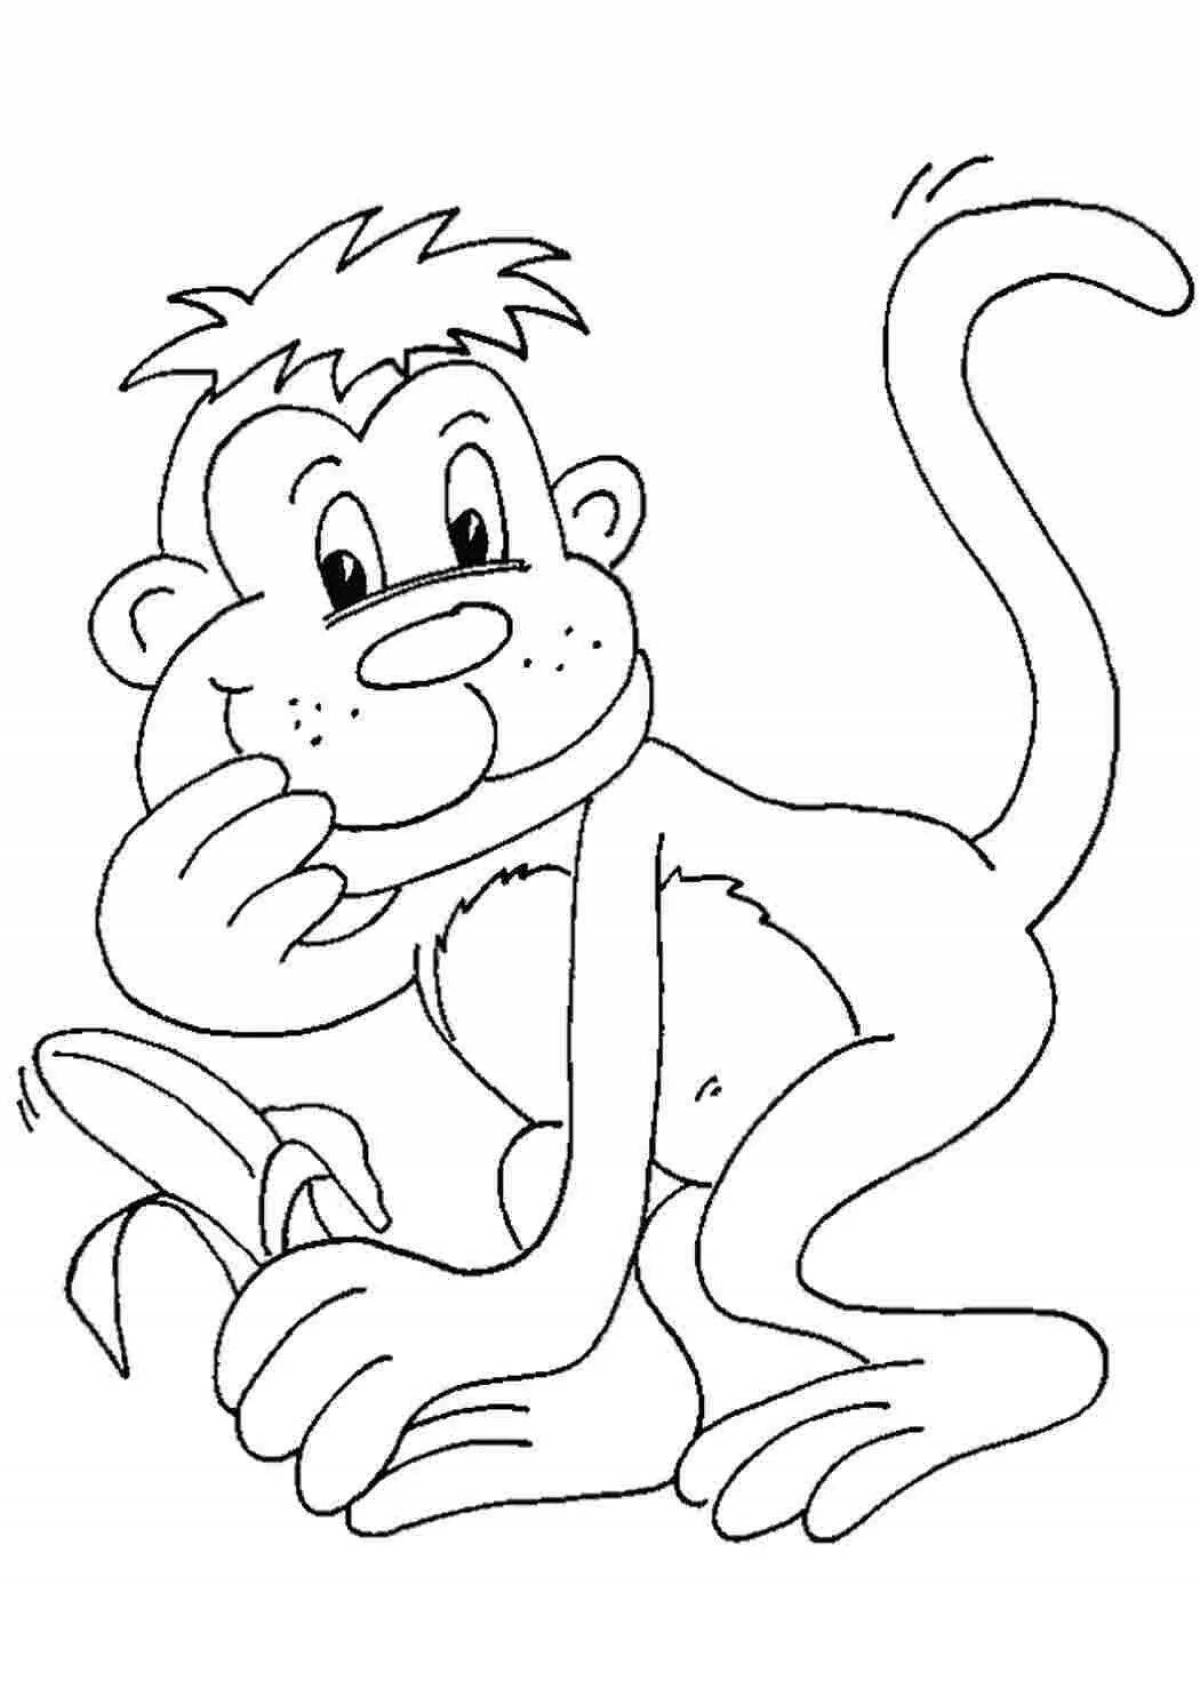 Baby monkey #1